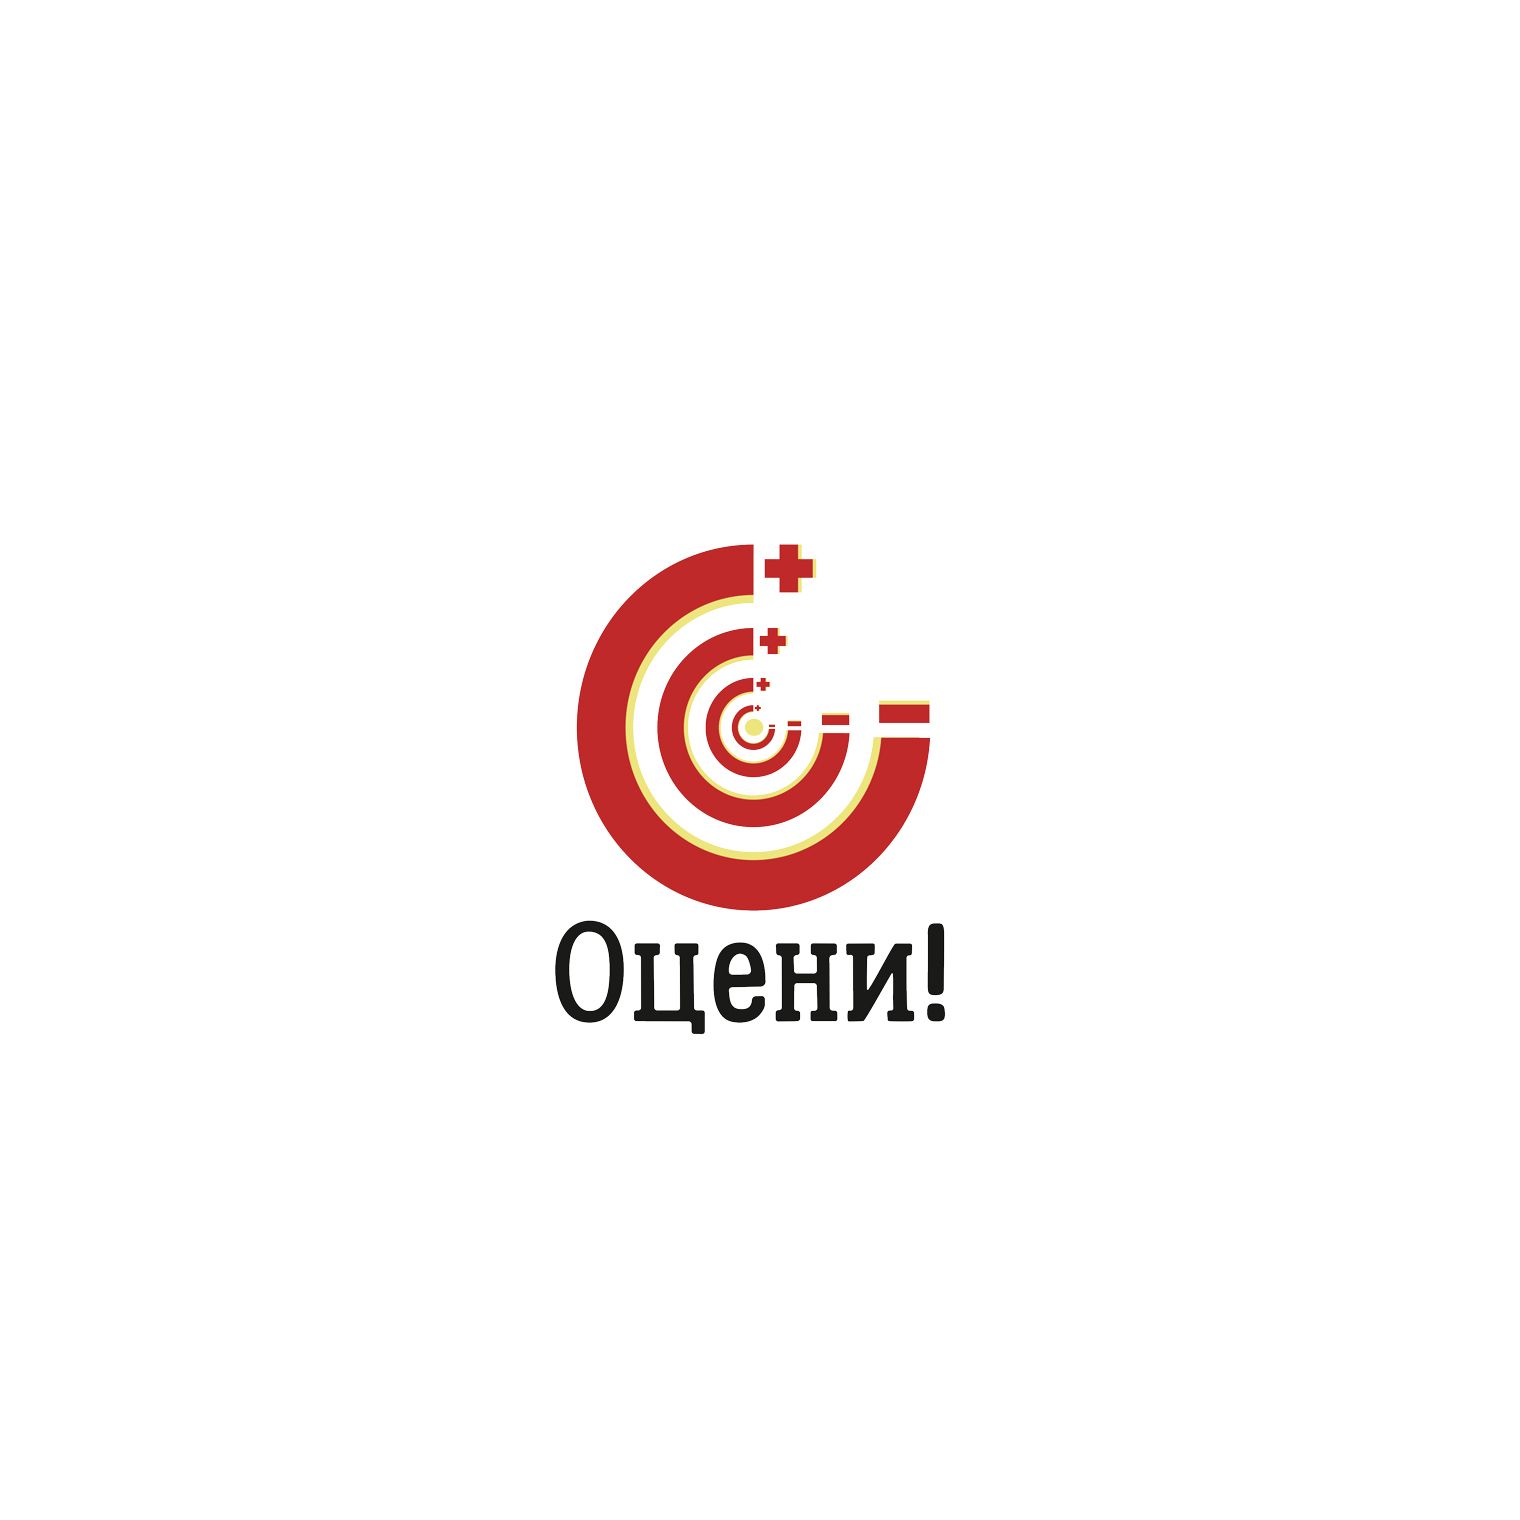 Логотип для Оцени!, Проект «Оцени!»  - дизайнер Kislodelic